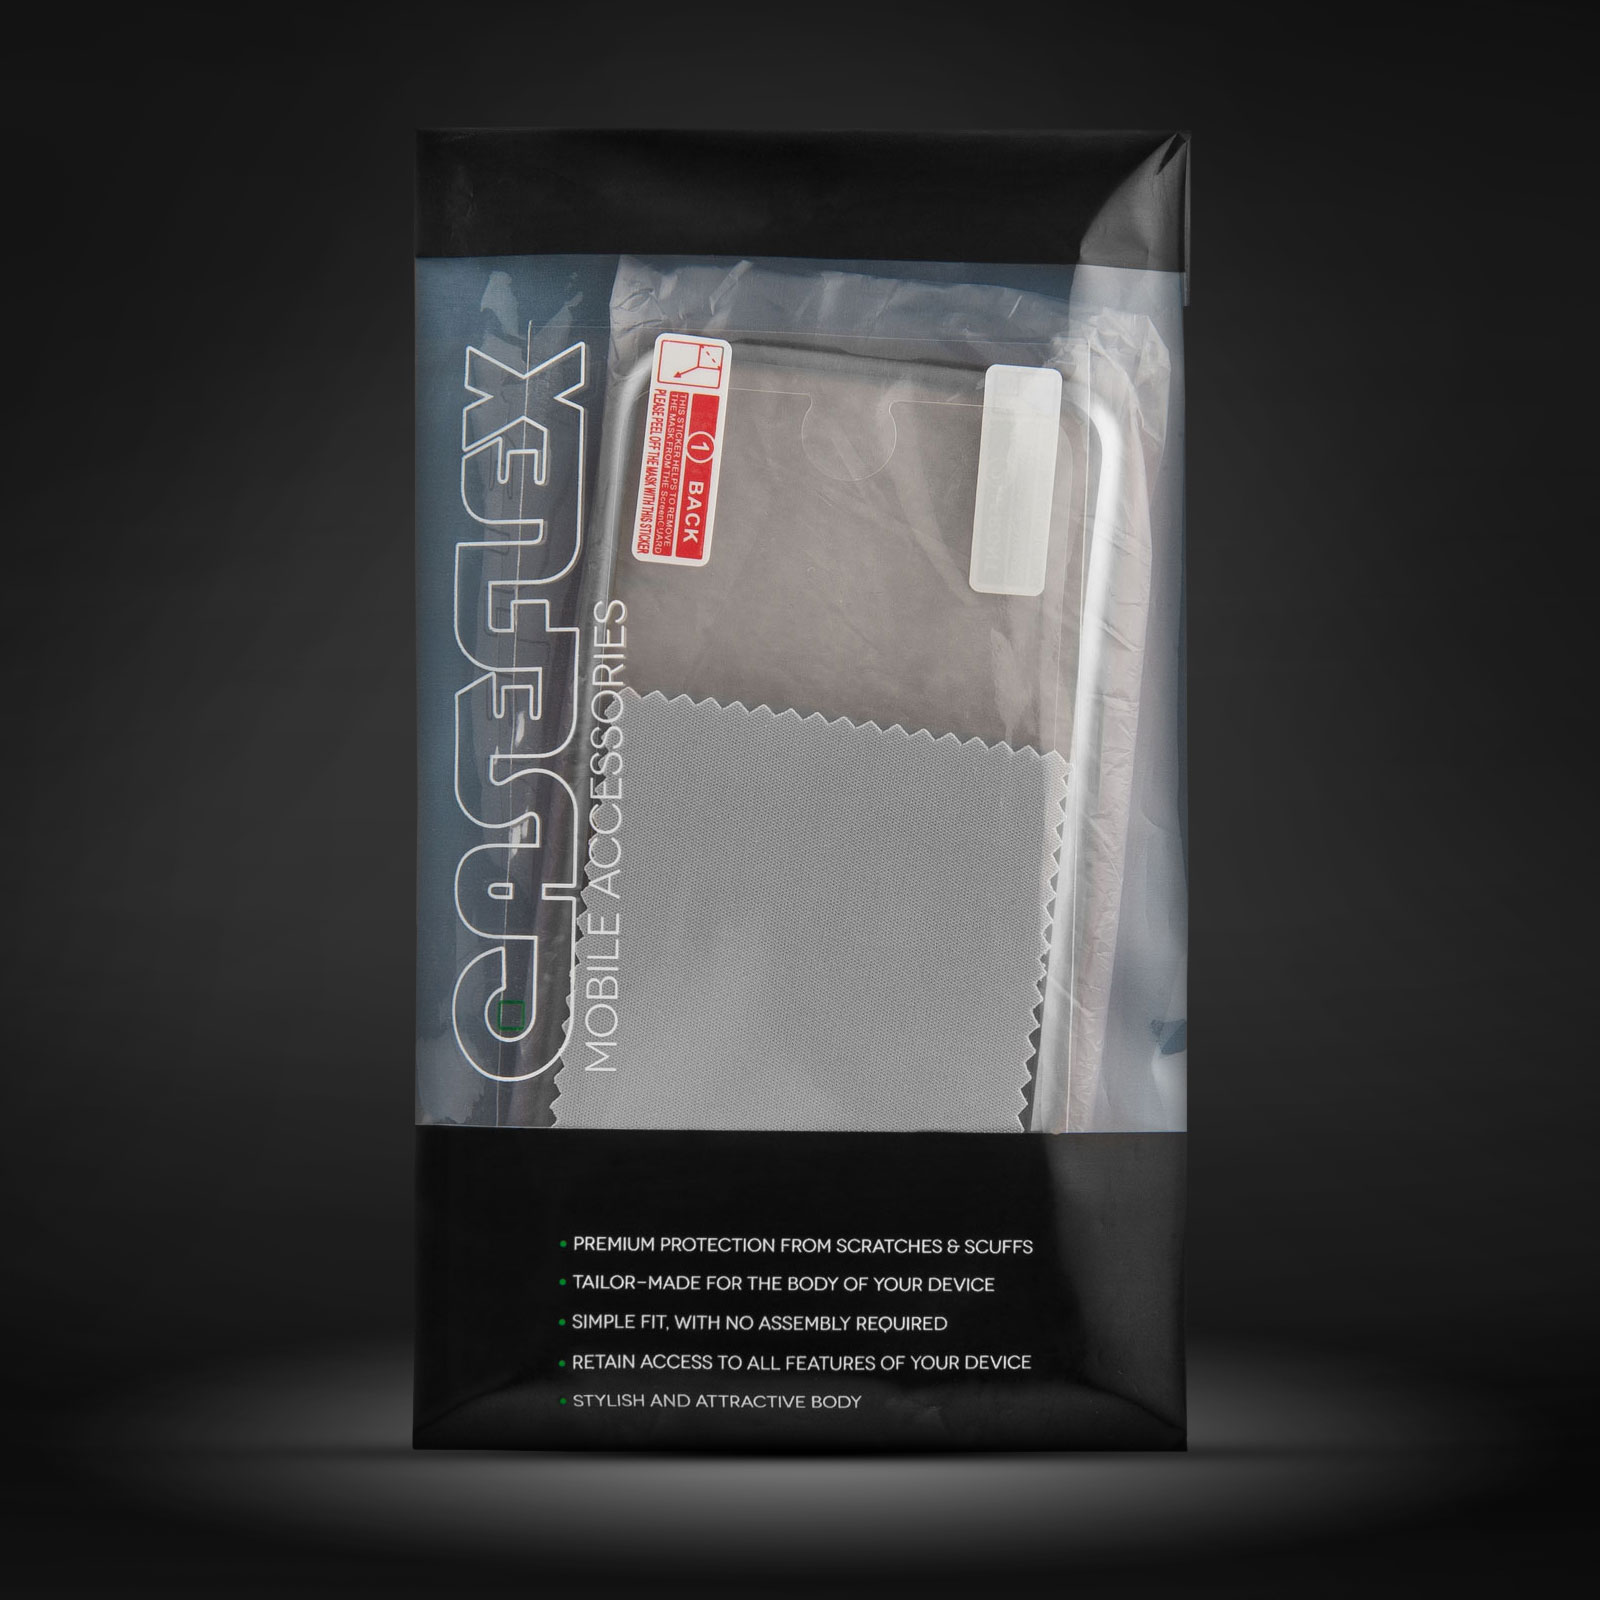 Caseflex iPhone 6S / 6 Electroplate TPU Gel Case - Silver